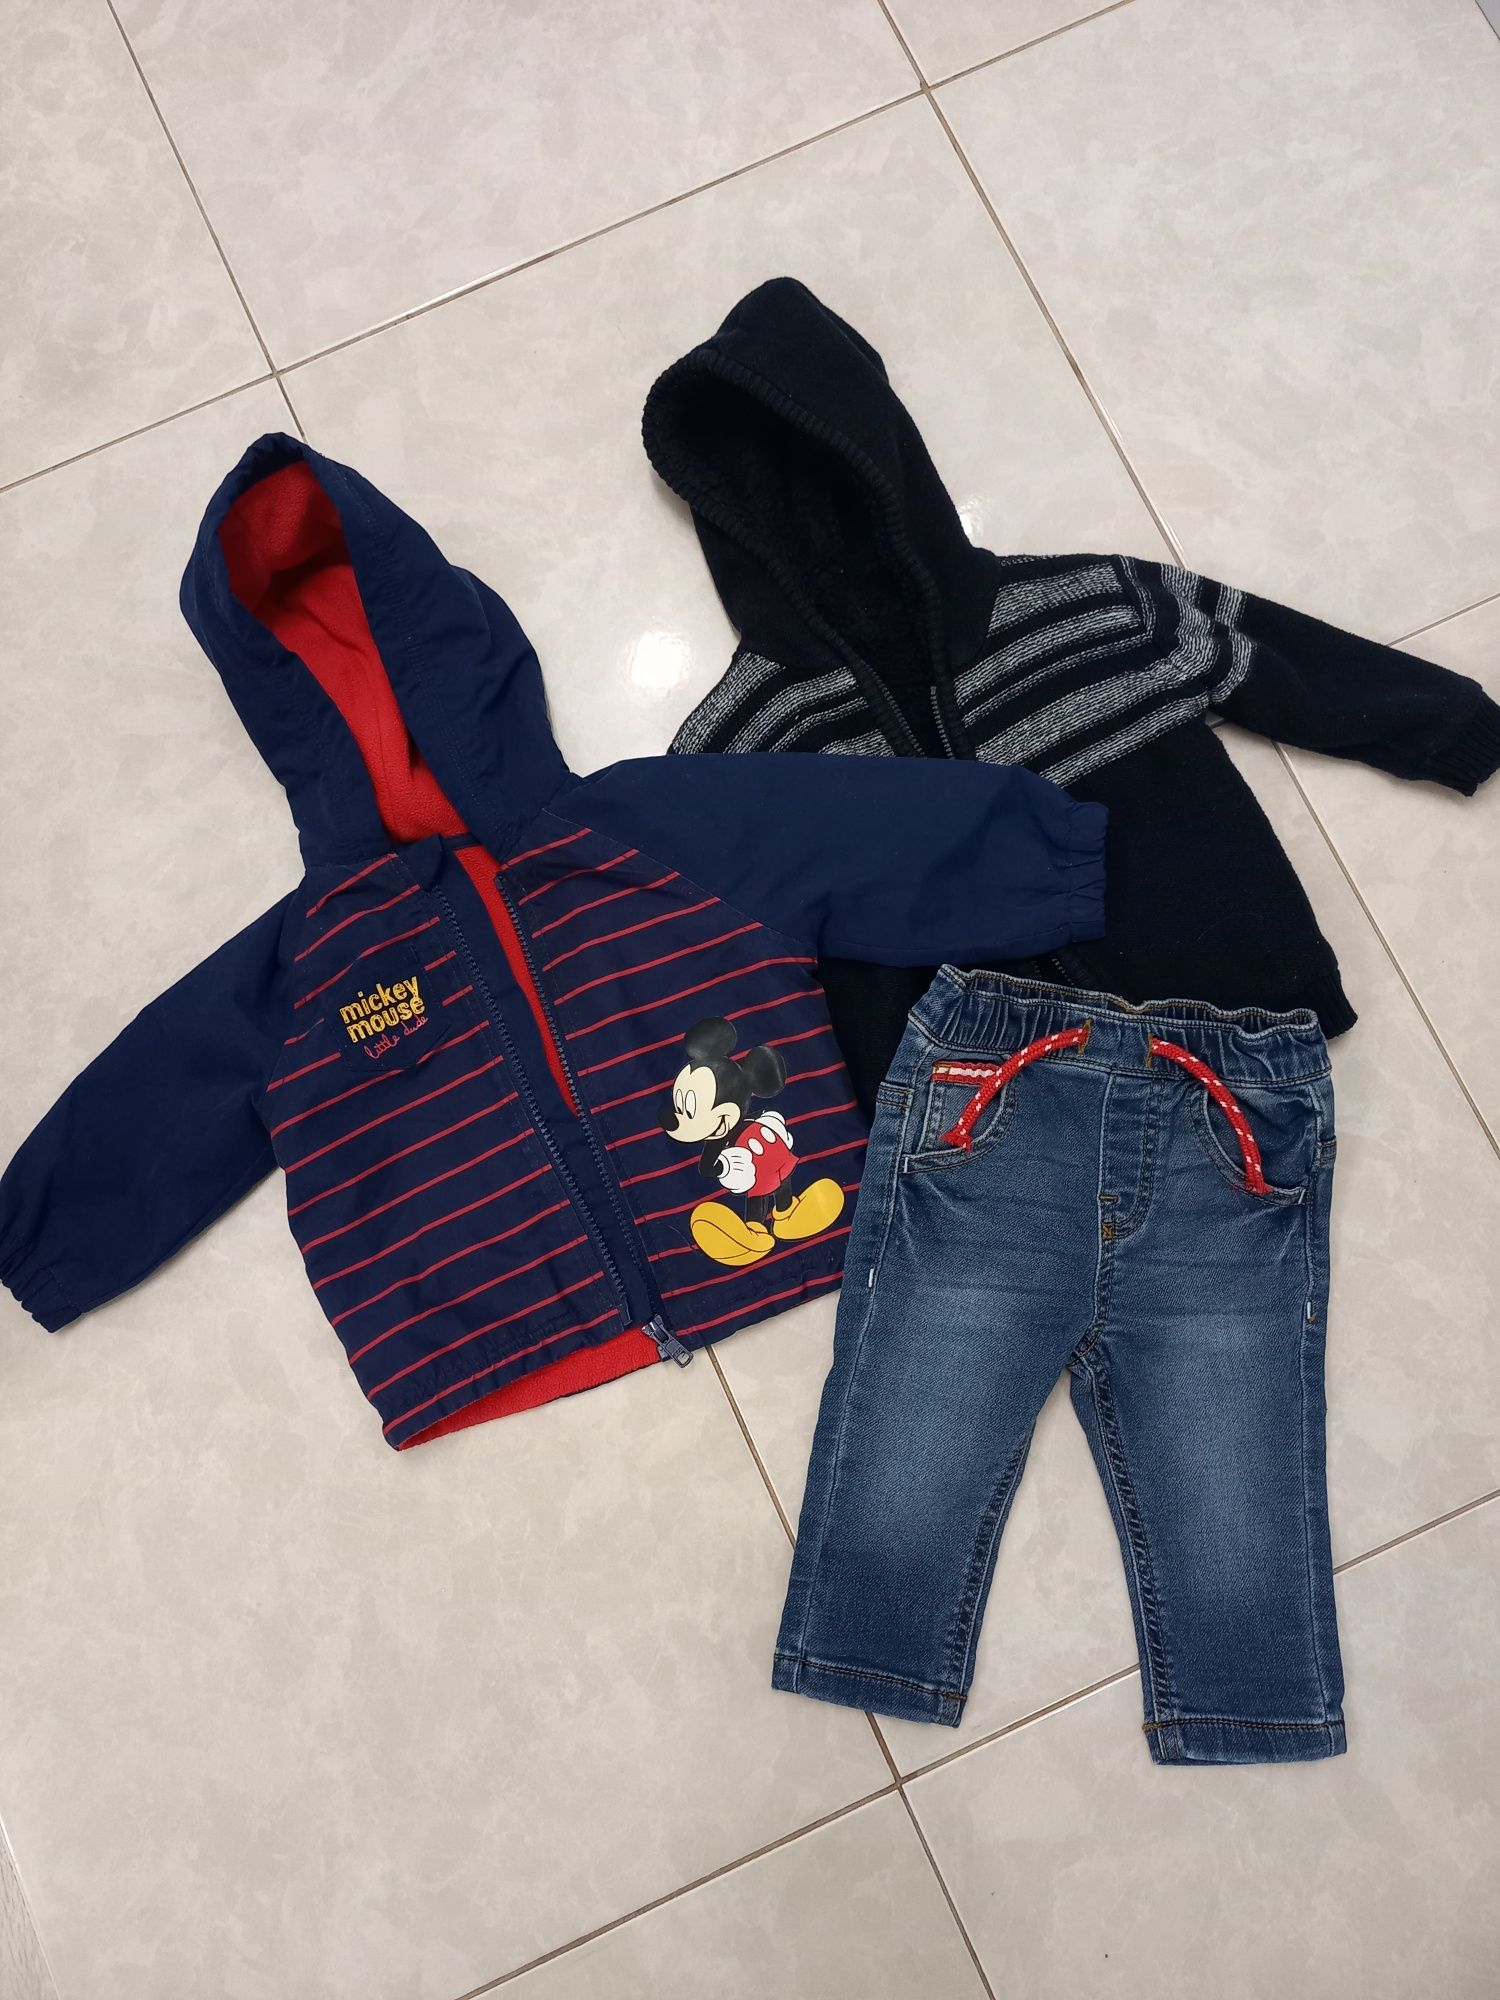 Куртка з Мікі Маусом, джинси, кофта на дитину 3-6 місяців